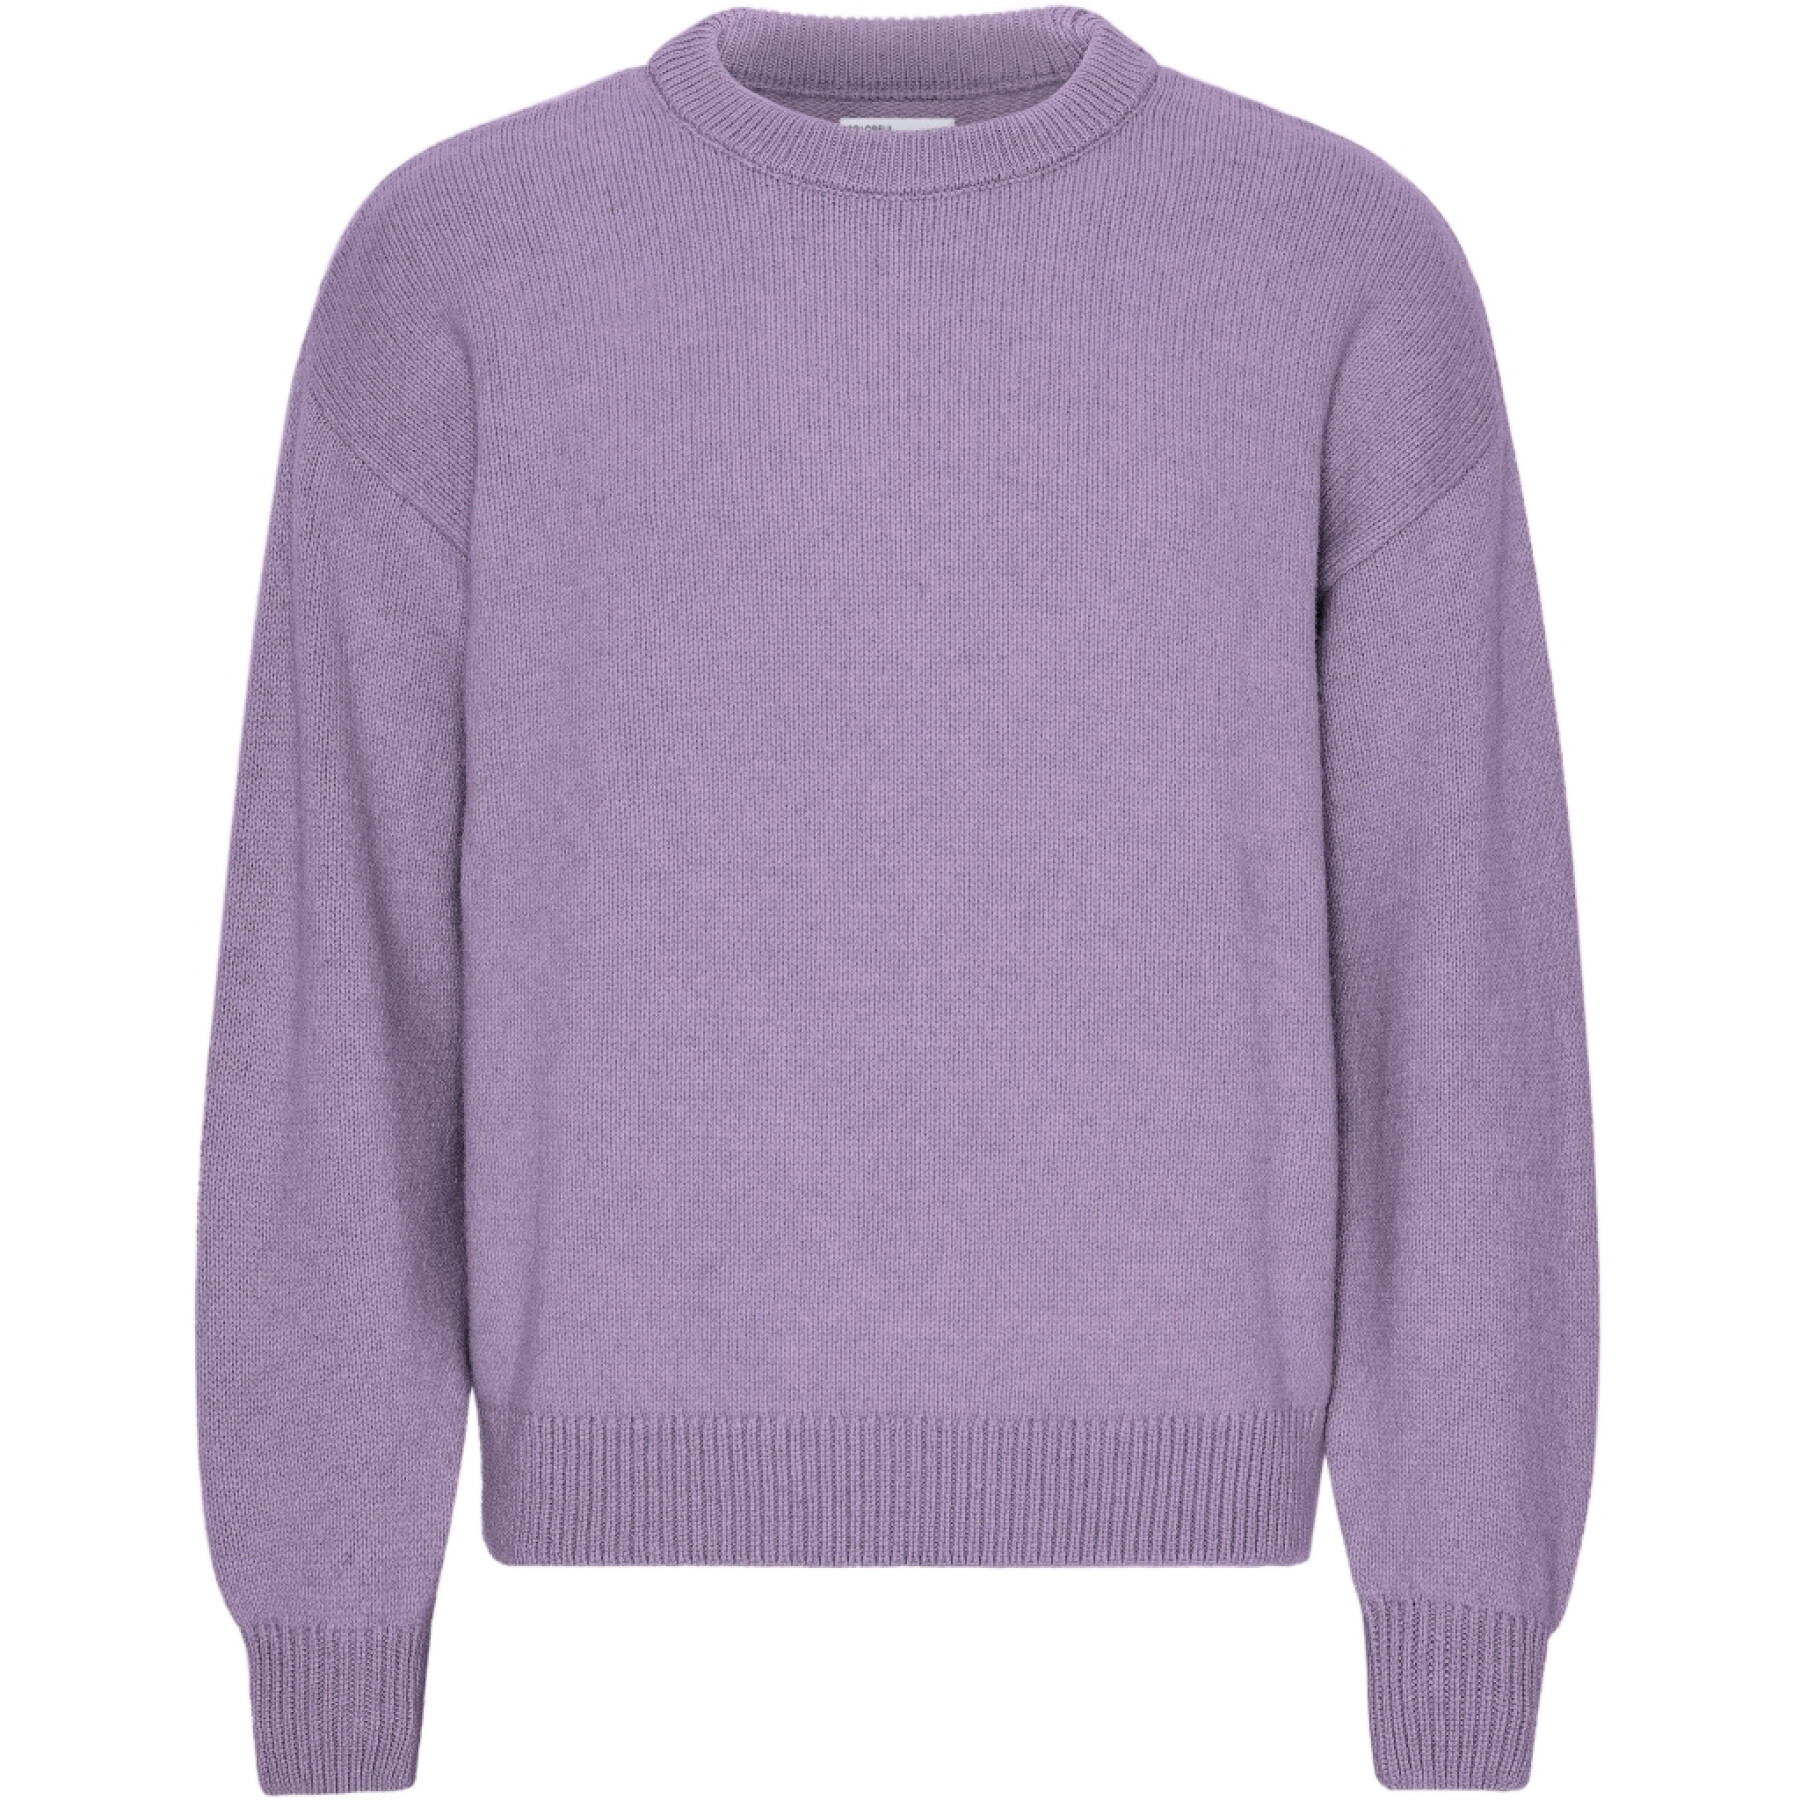 Oversize-Pullover mit Rundhalsausschnitt Colorful Standard Purple Haze